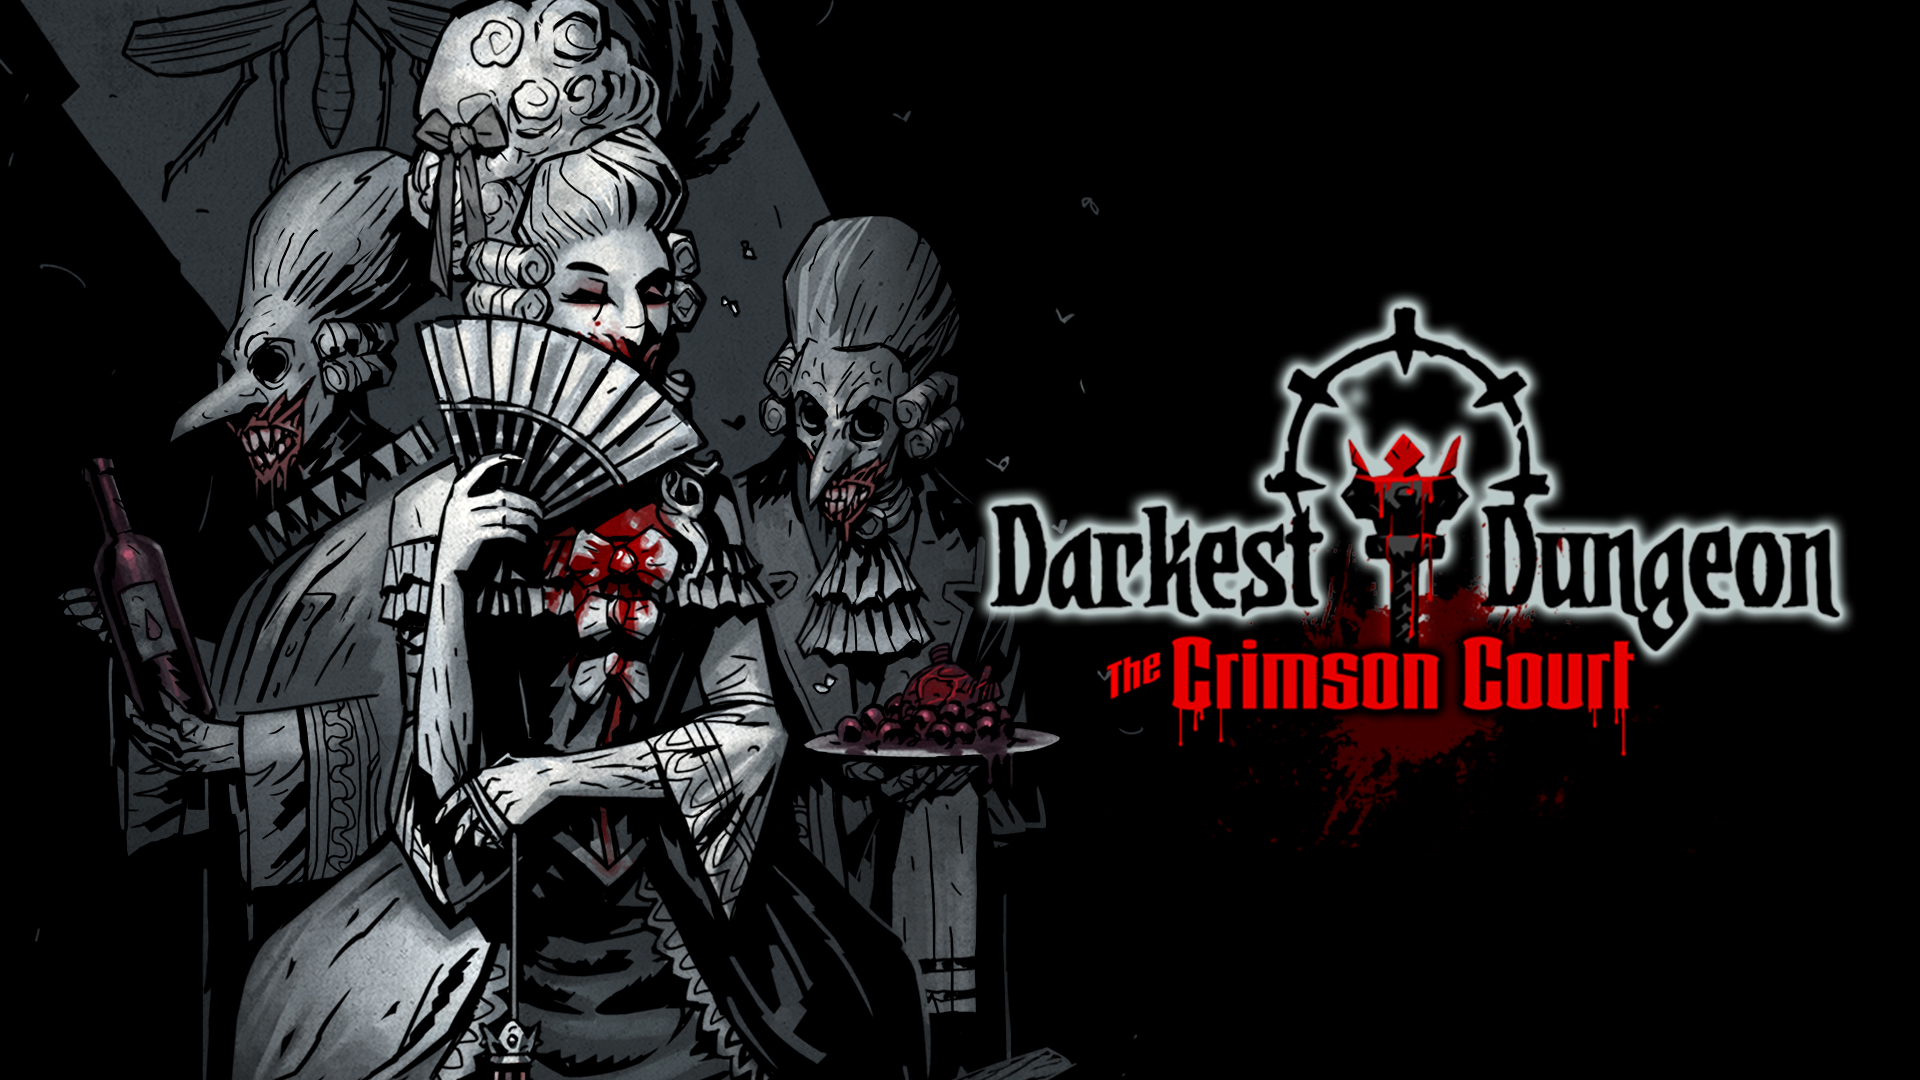 darkest dungeon crimson edition ps4 review